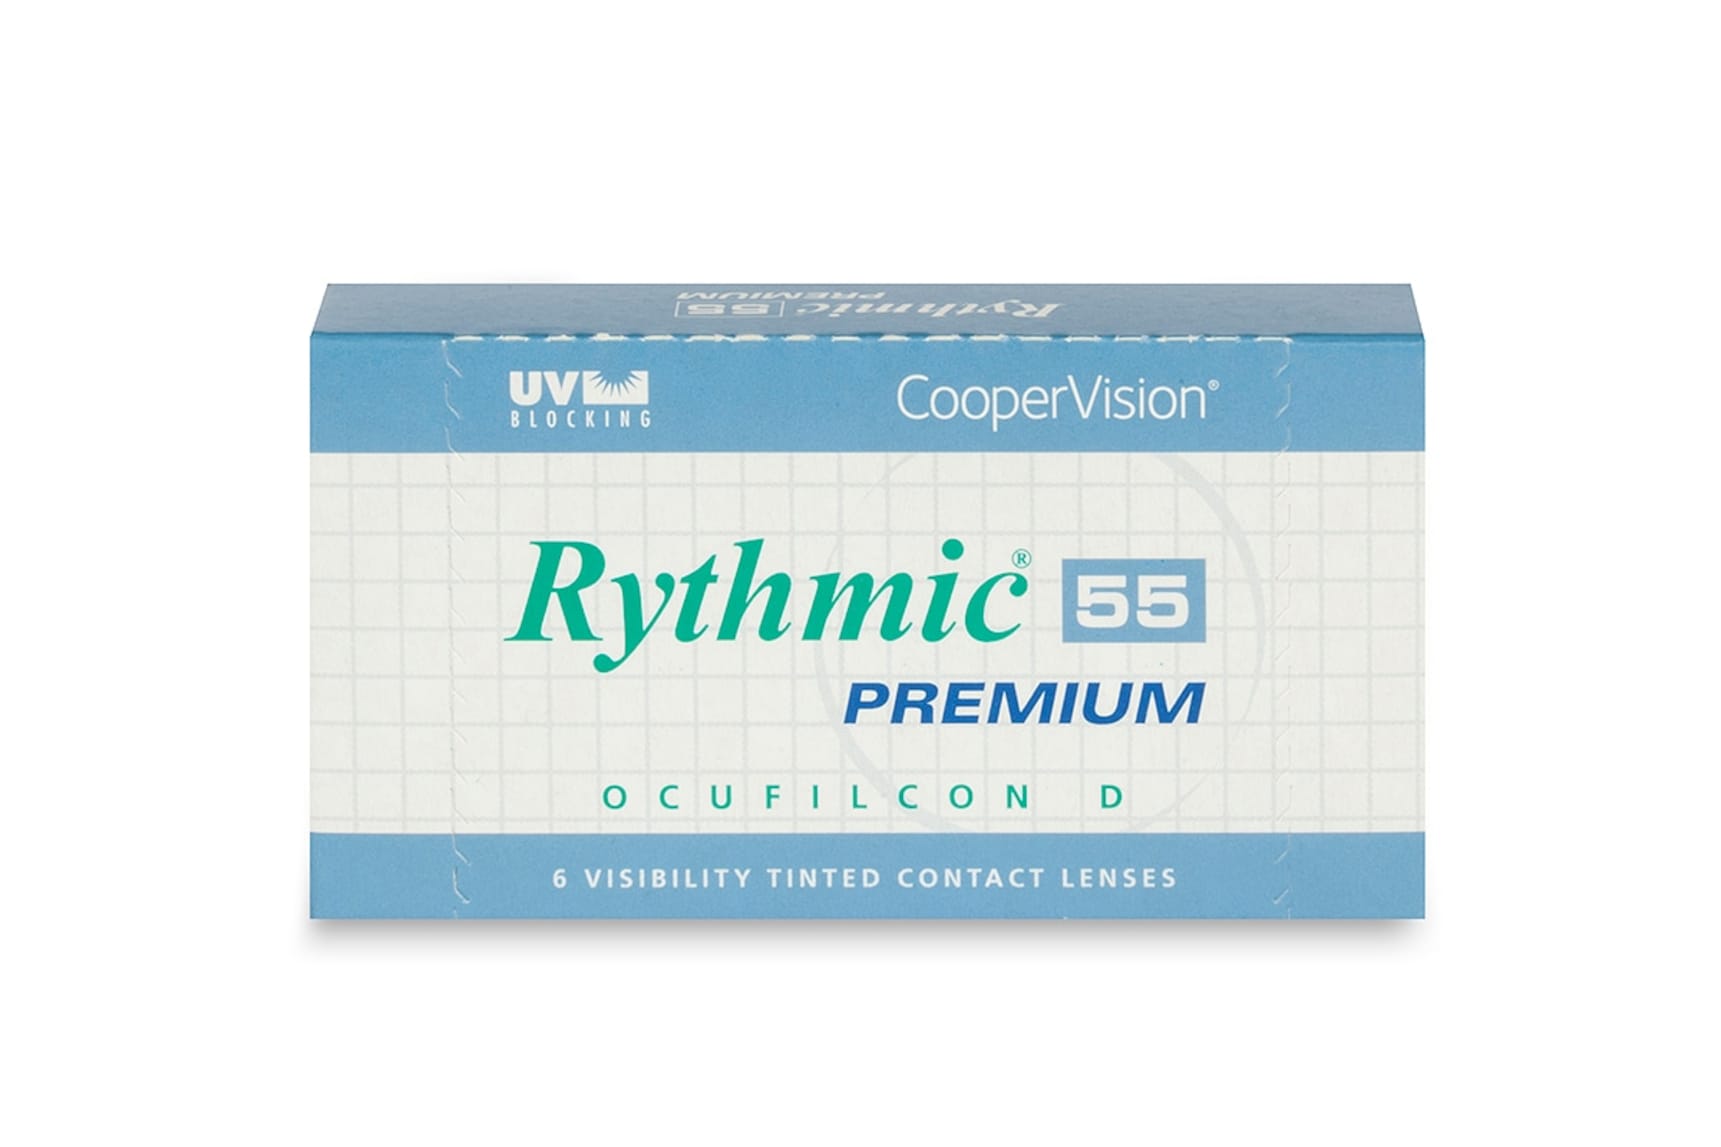 Rythmic 55 Premium